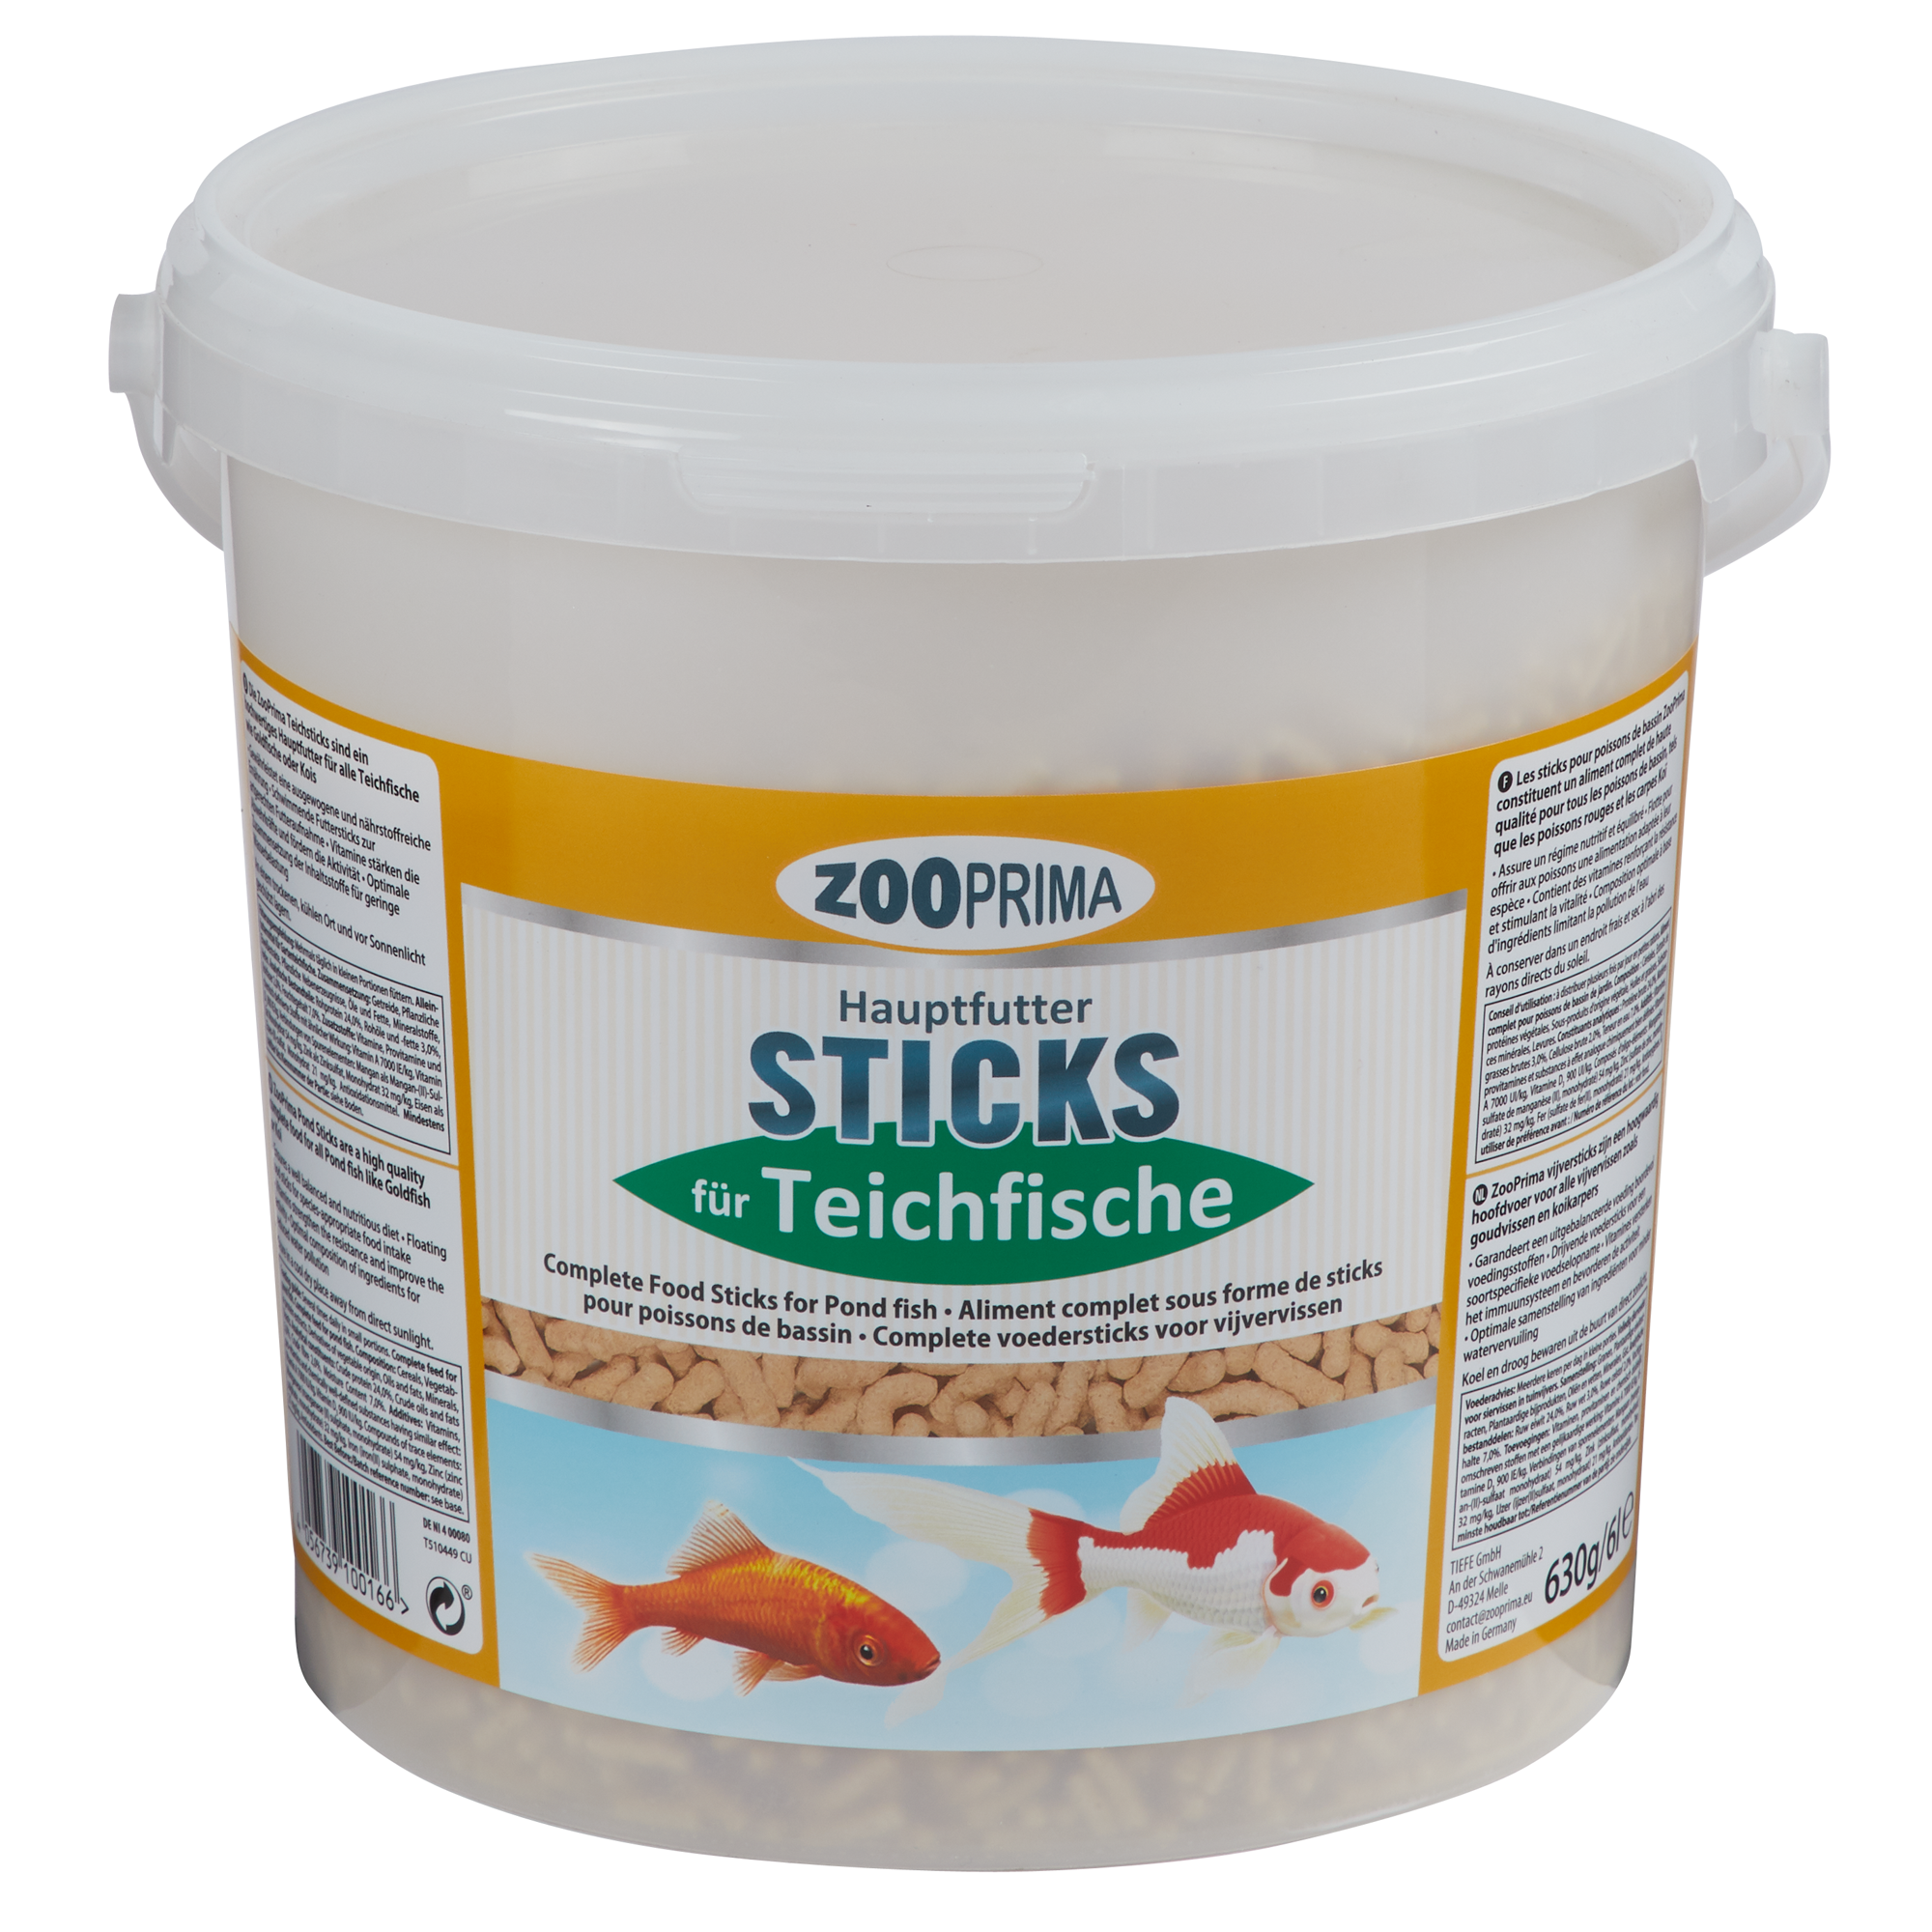 Hauptfutter Sticks für Teichfische 630 g + product picture